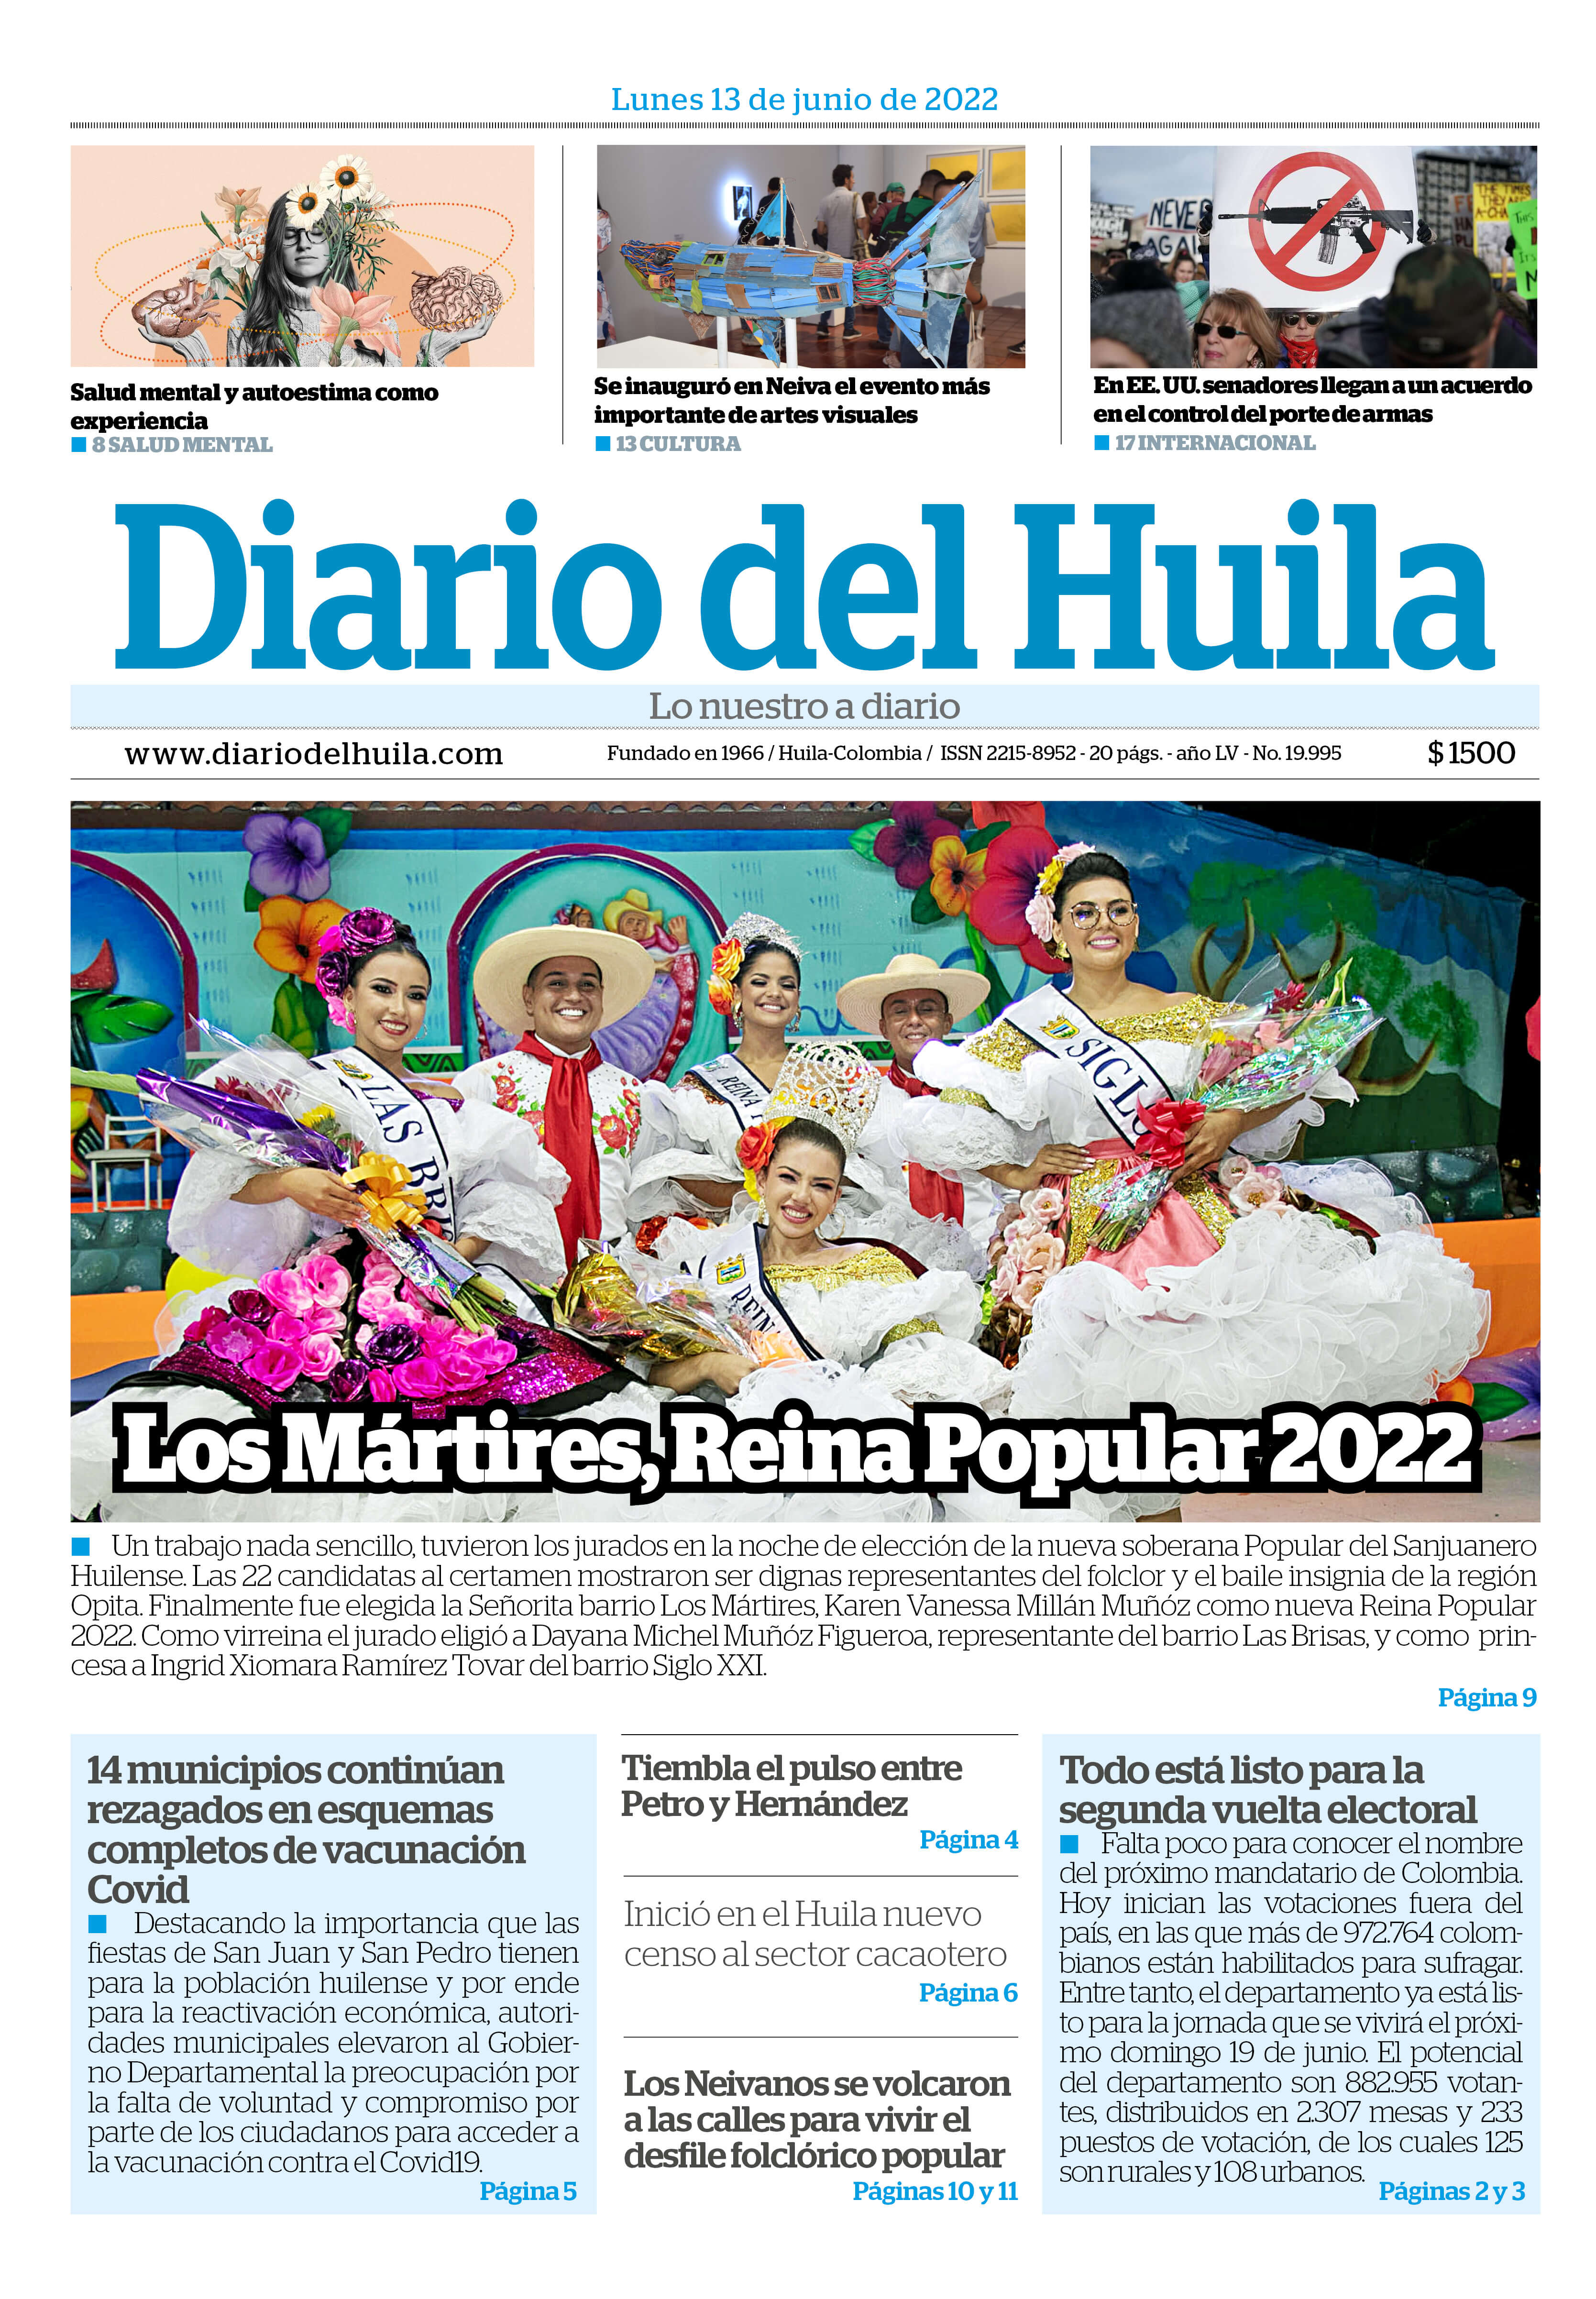 Diario del Huila 13 de junio de 2022